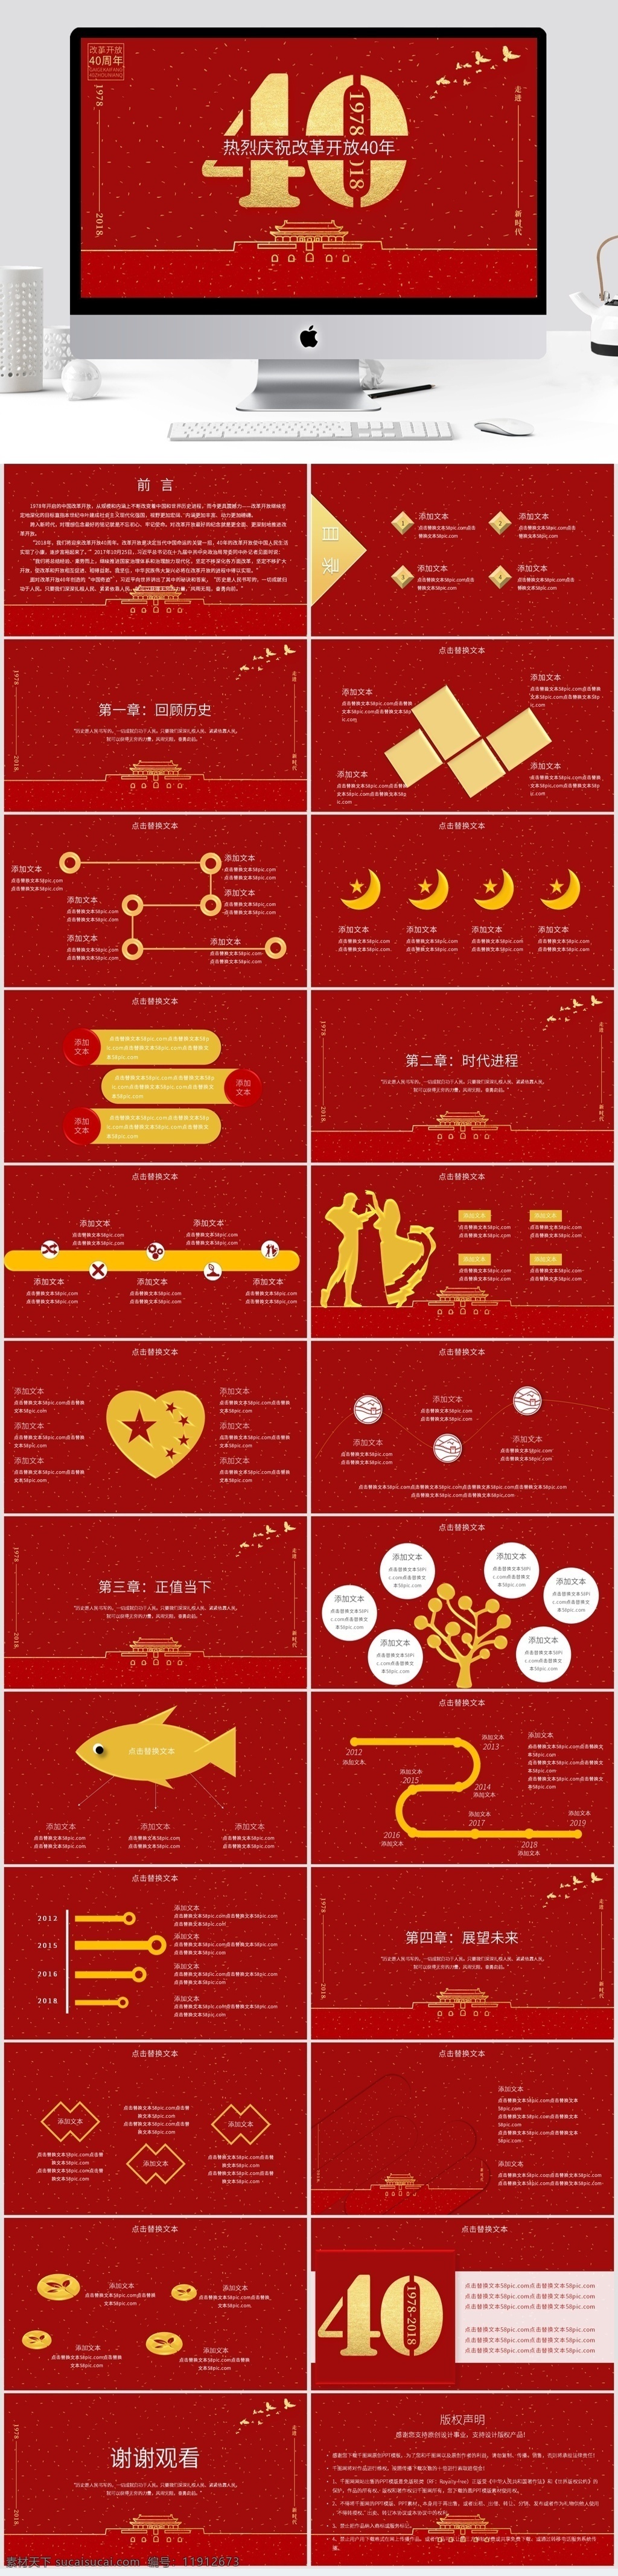 纪念 改革开放 周年 纪念日 喜庆 庆祝 经济发展 40周年 红色中国